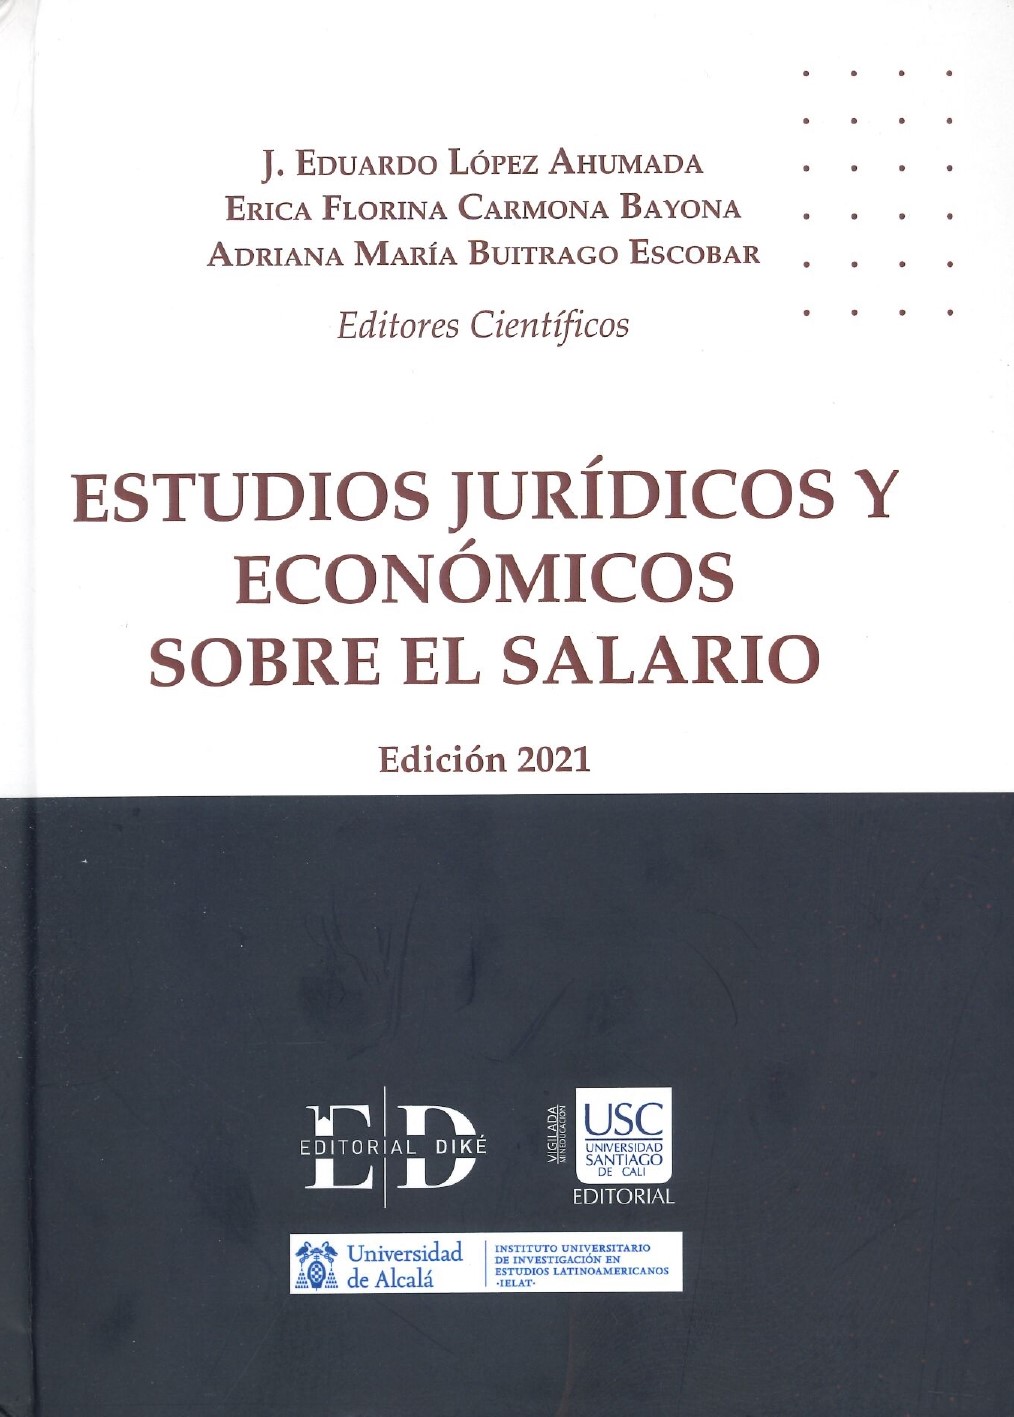 Imagen de portada del libro Estudios jurídicos y económicos sobre el salario